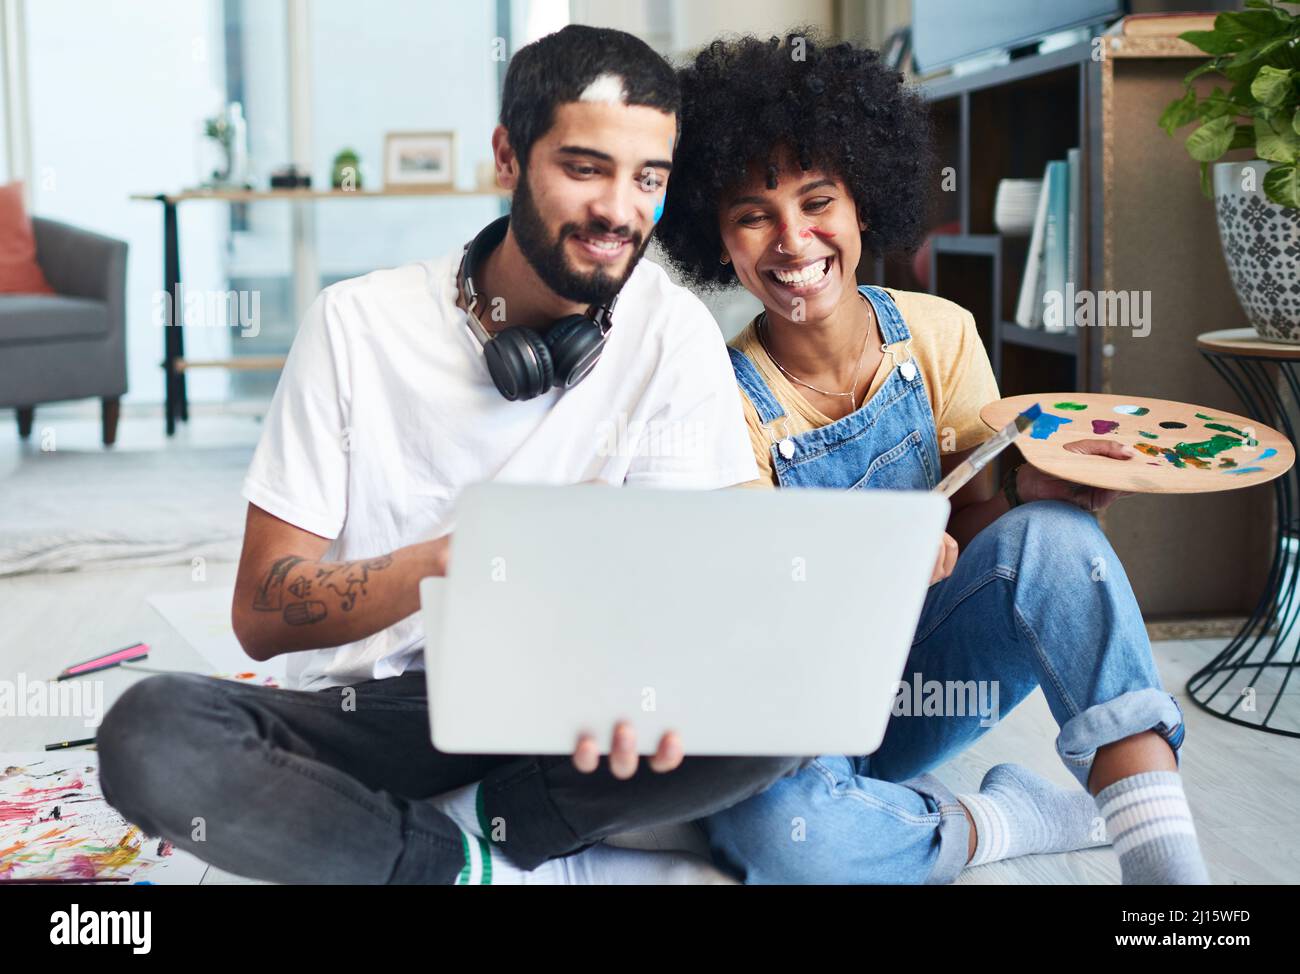 El Internet está lleno de actividades divertidas para parejas. Foto de una  pareja joven usando un ordenador portátil mientras pintaba en casa  Fotografía de stock - Alamy